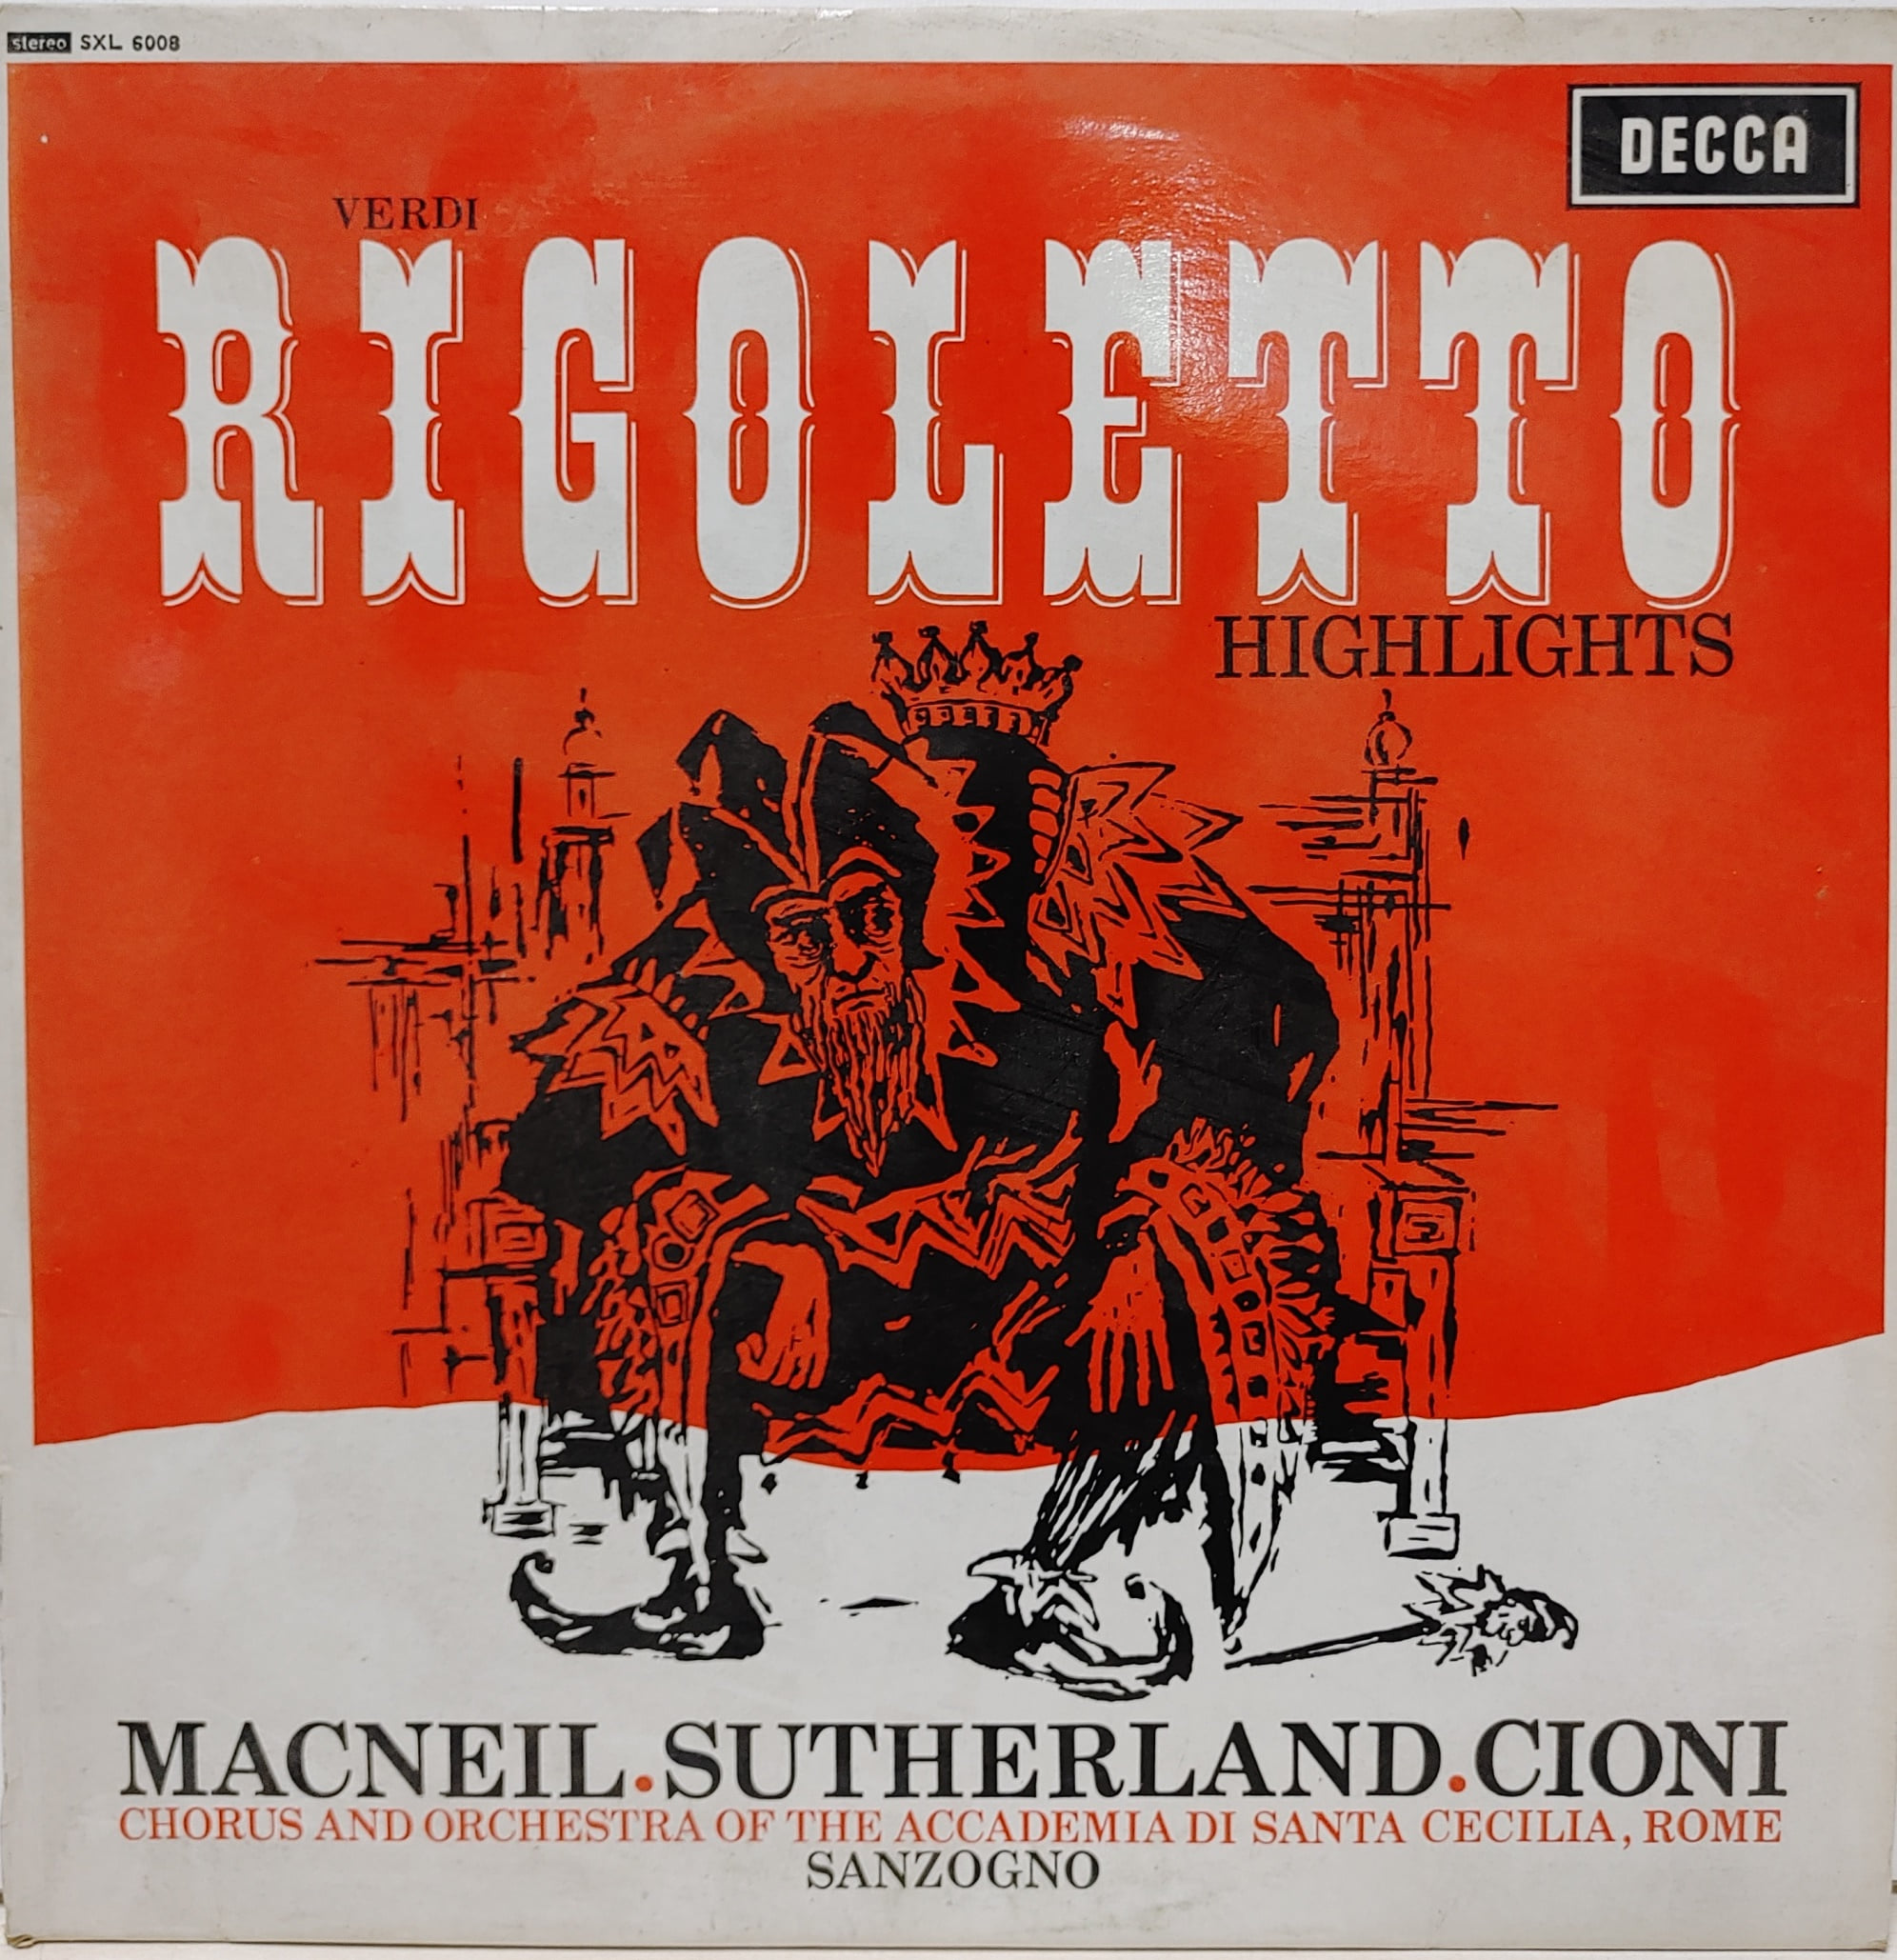 Verdi Rigoletto Highlights / Cornell Macneil Joan Sutherland Cioni Sanzogno